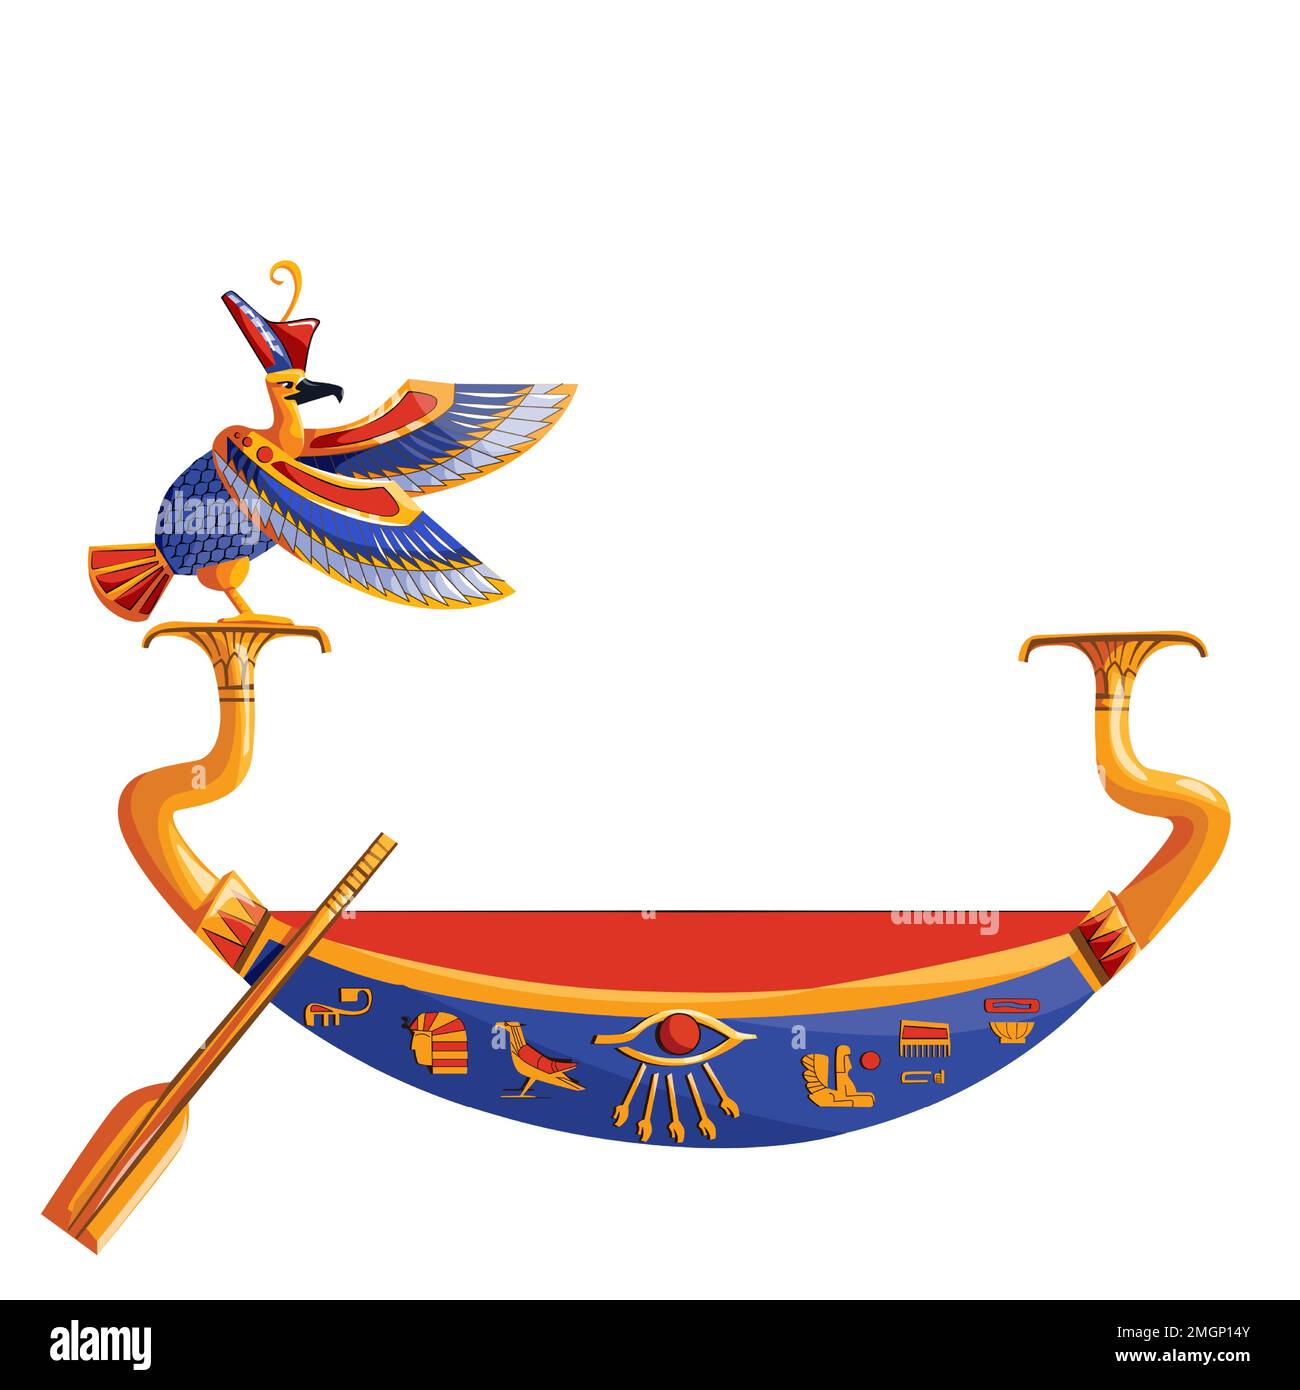 Antico Egitto barca di legno con remi o pagaia per sole dio viaggio cartoon illustrazione vettore. Simbolo religioso della cultura egiziana, barque decorato con uccello per il Dio antico, metafora del cambiamento di giorno e di notte Illustrazione Vettoriale